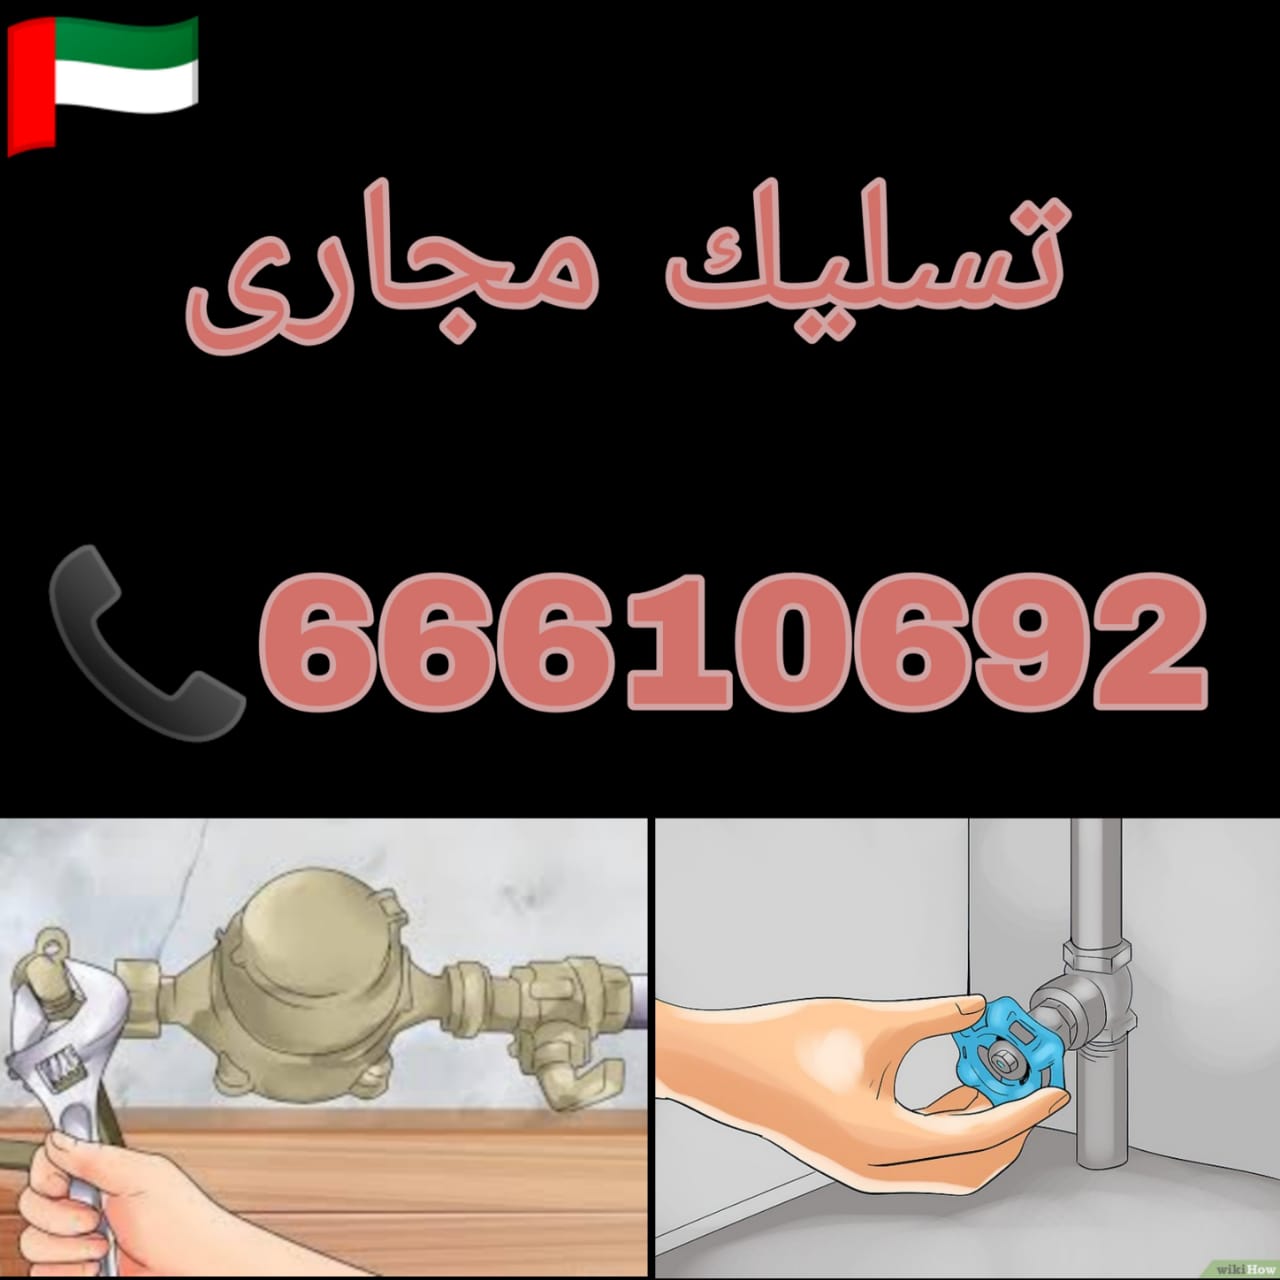 شركة تسليك مجاري بالكويت / 66610692 / صيانة وتركيب فني صحي الكويت